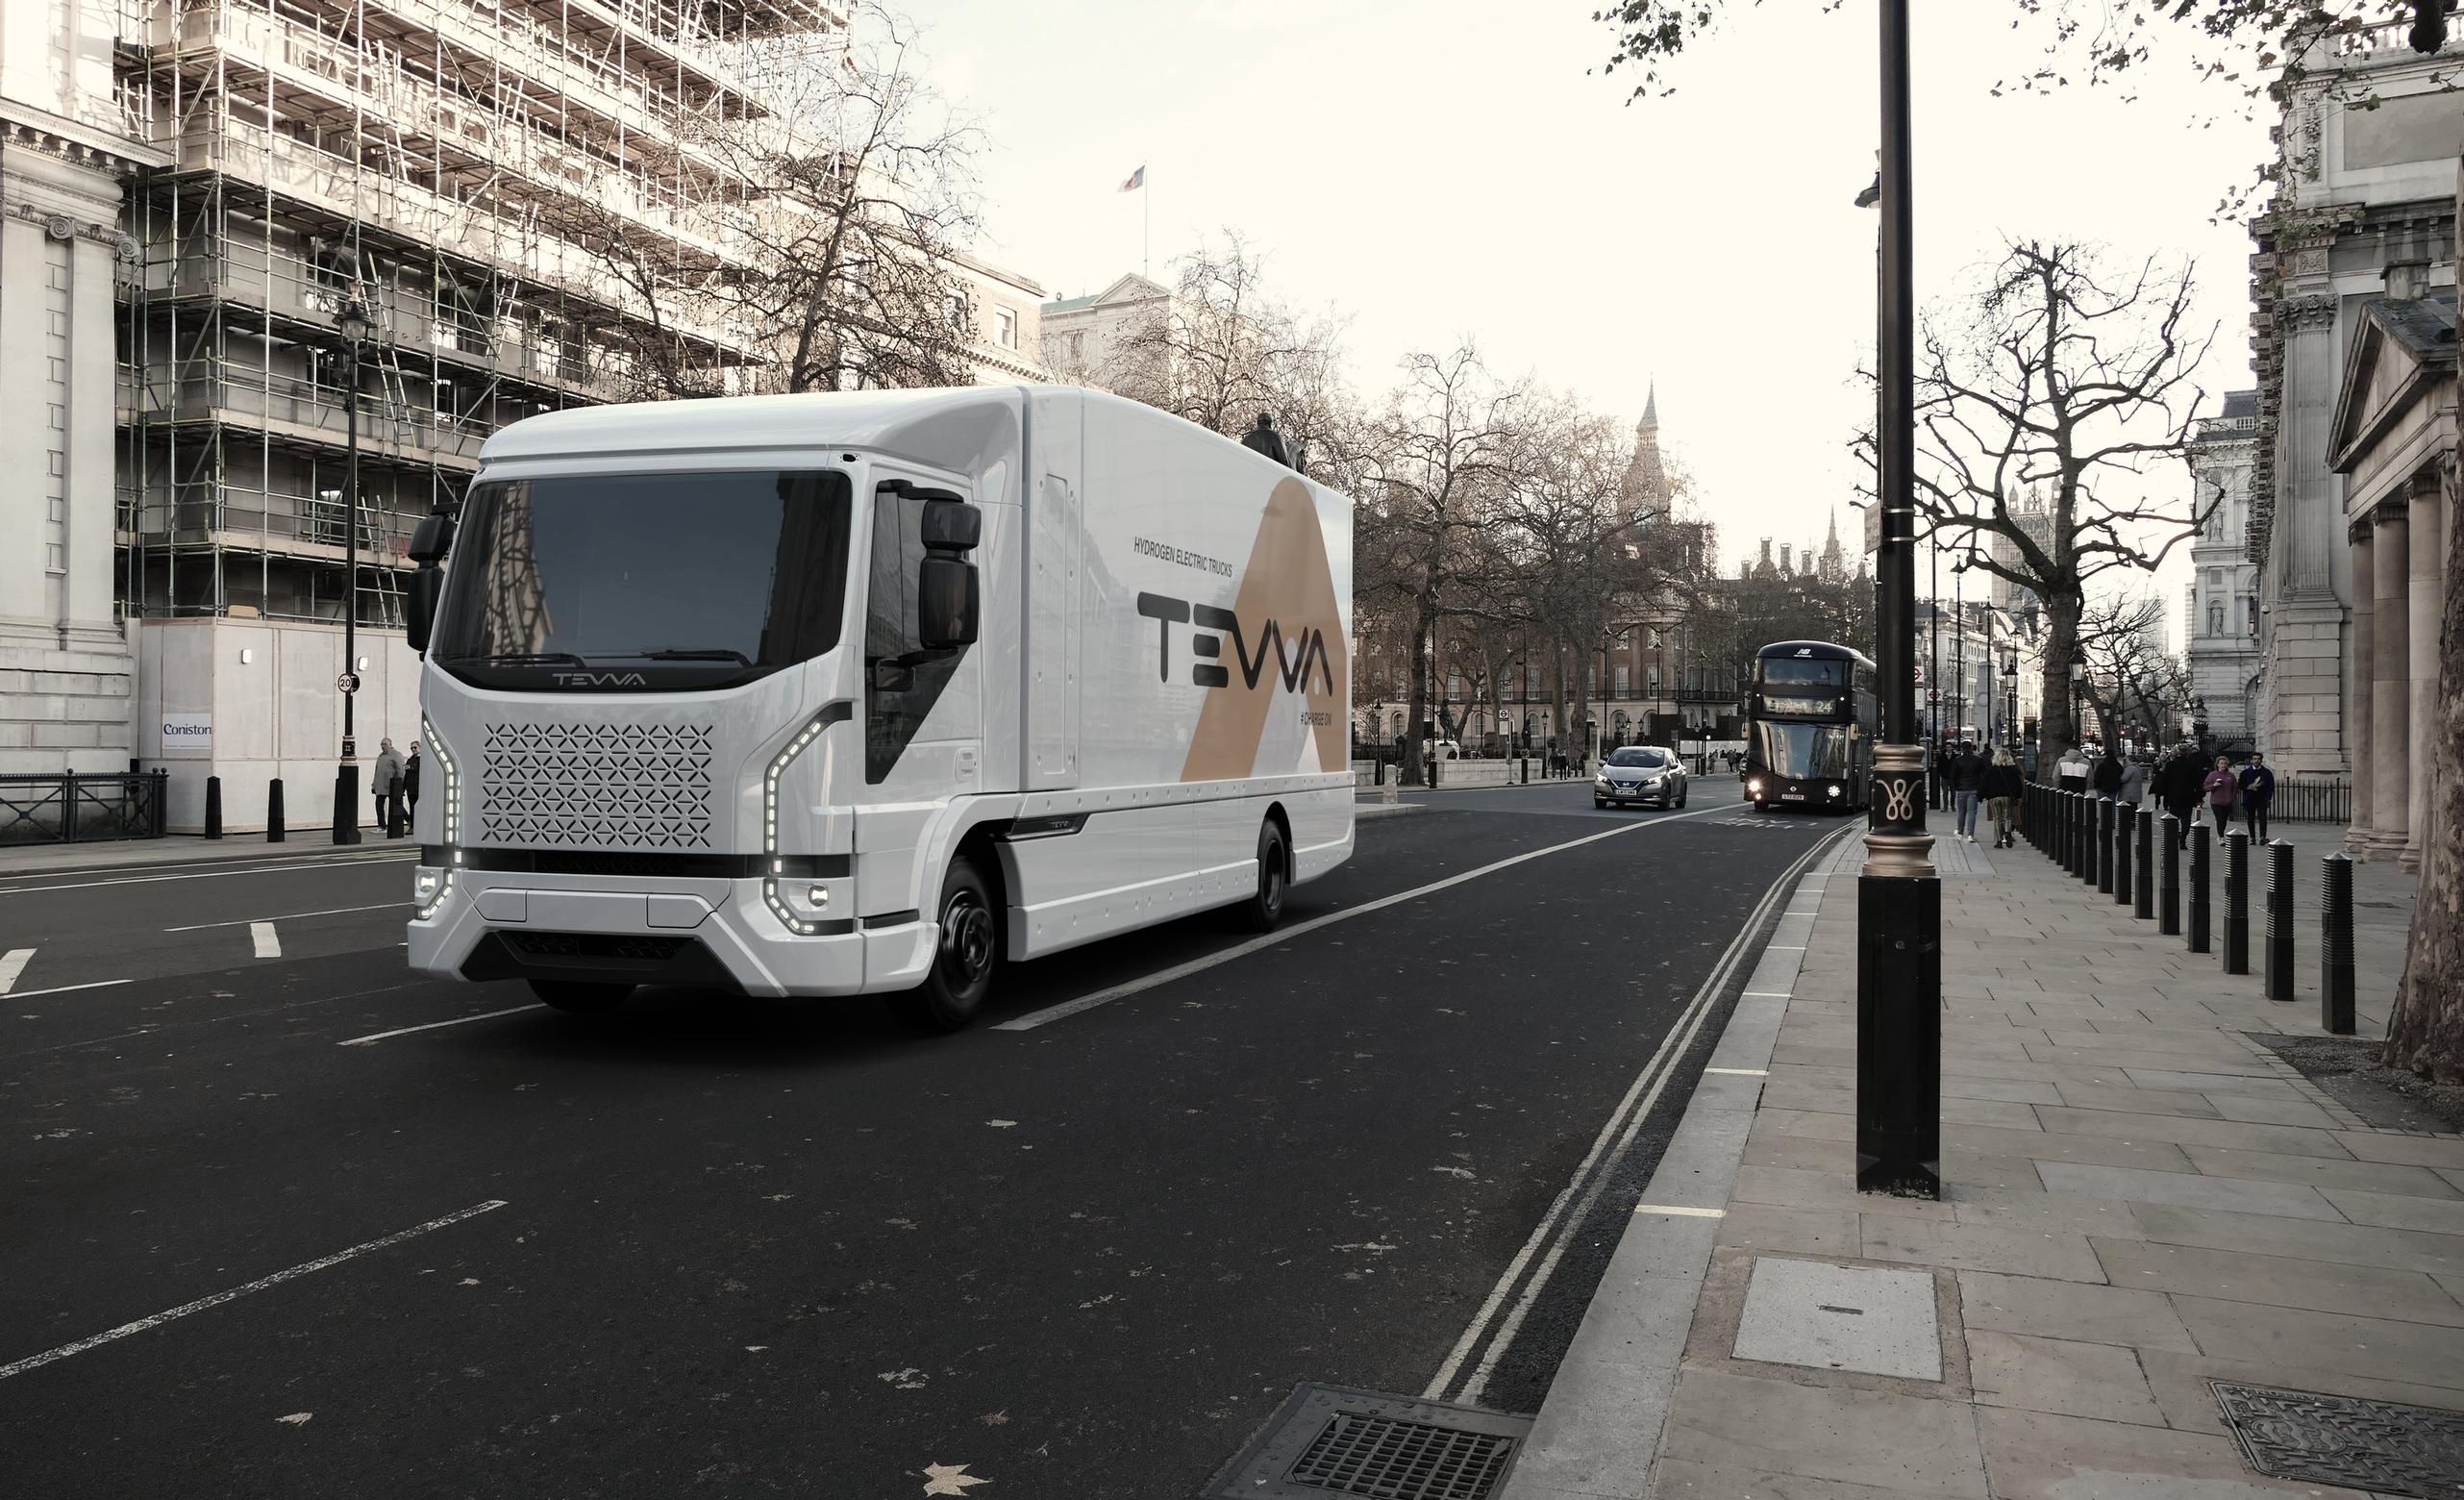 ATevva truck in London